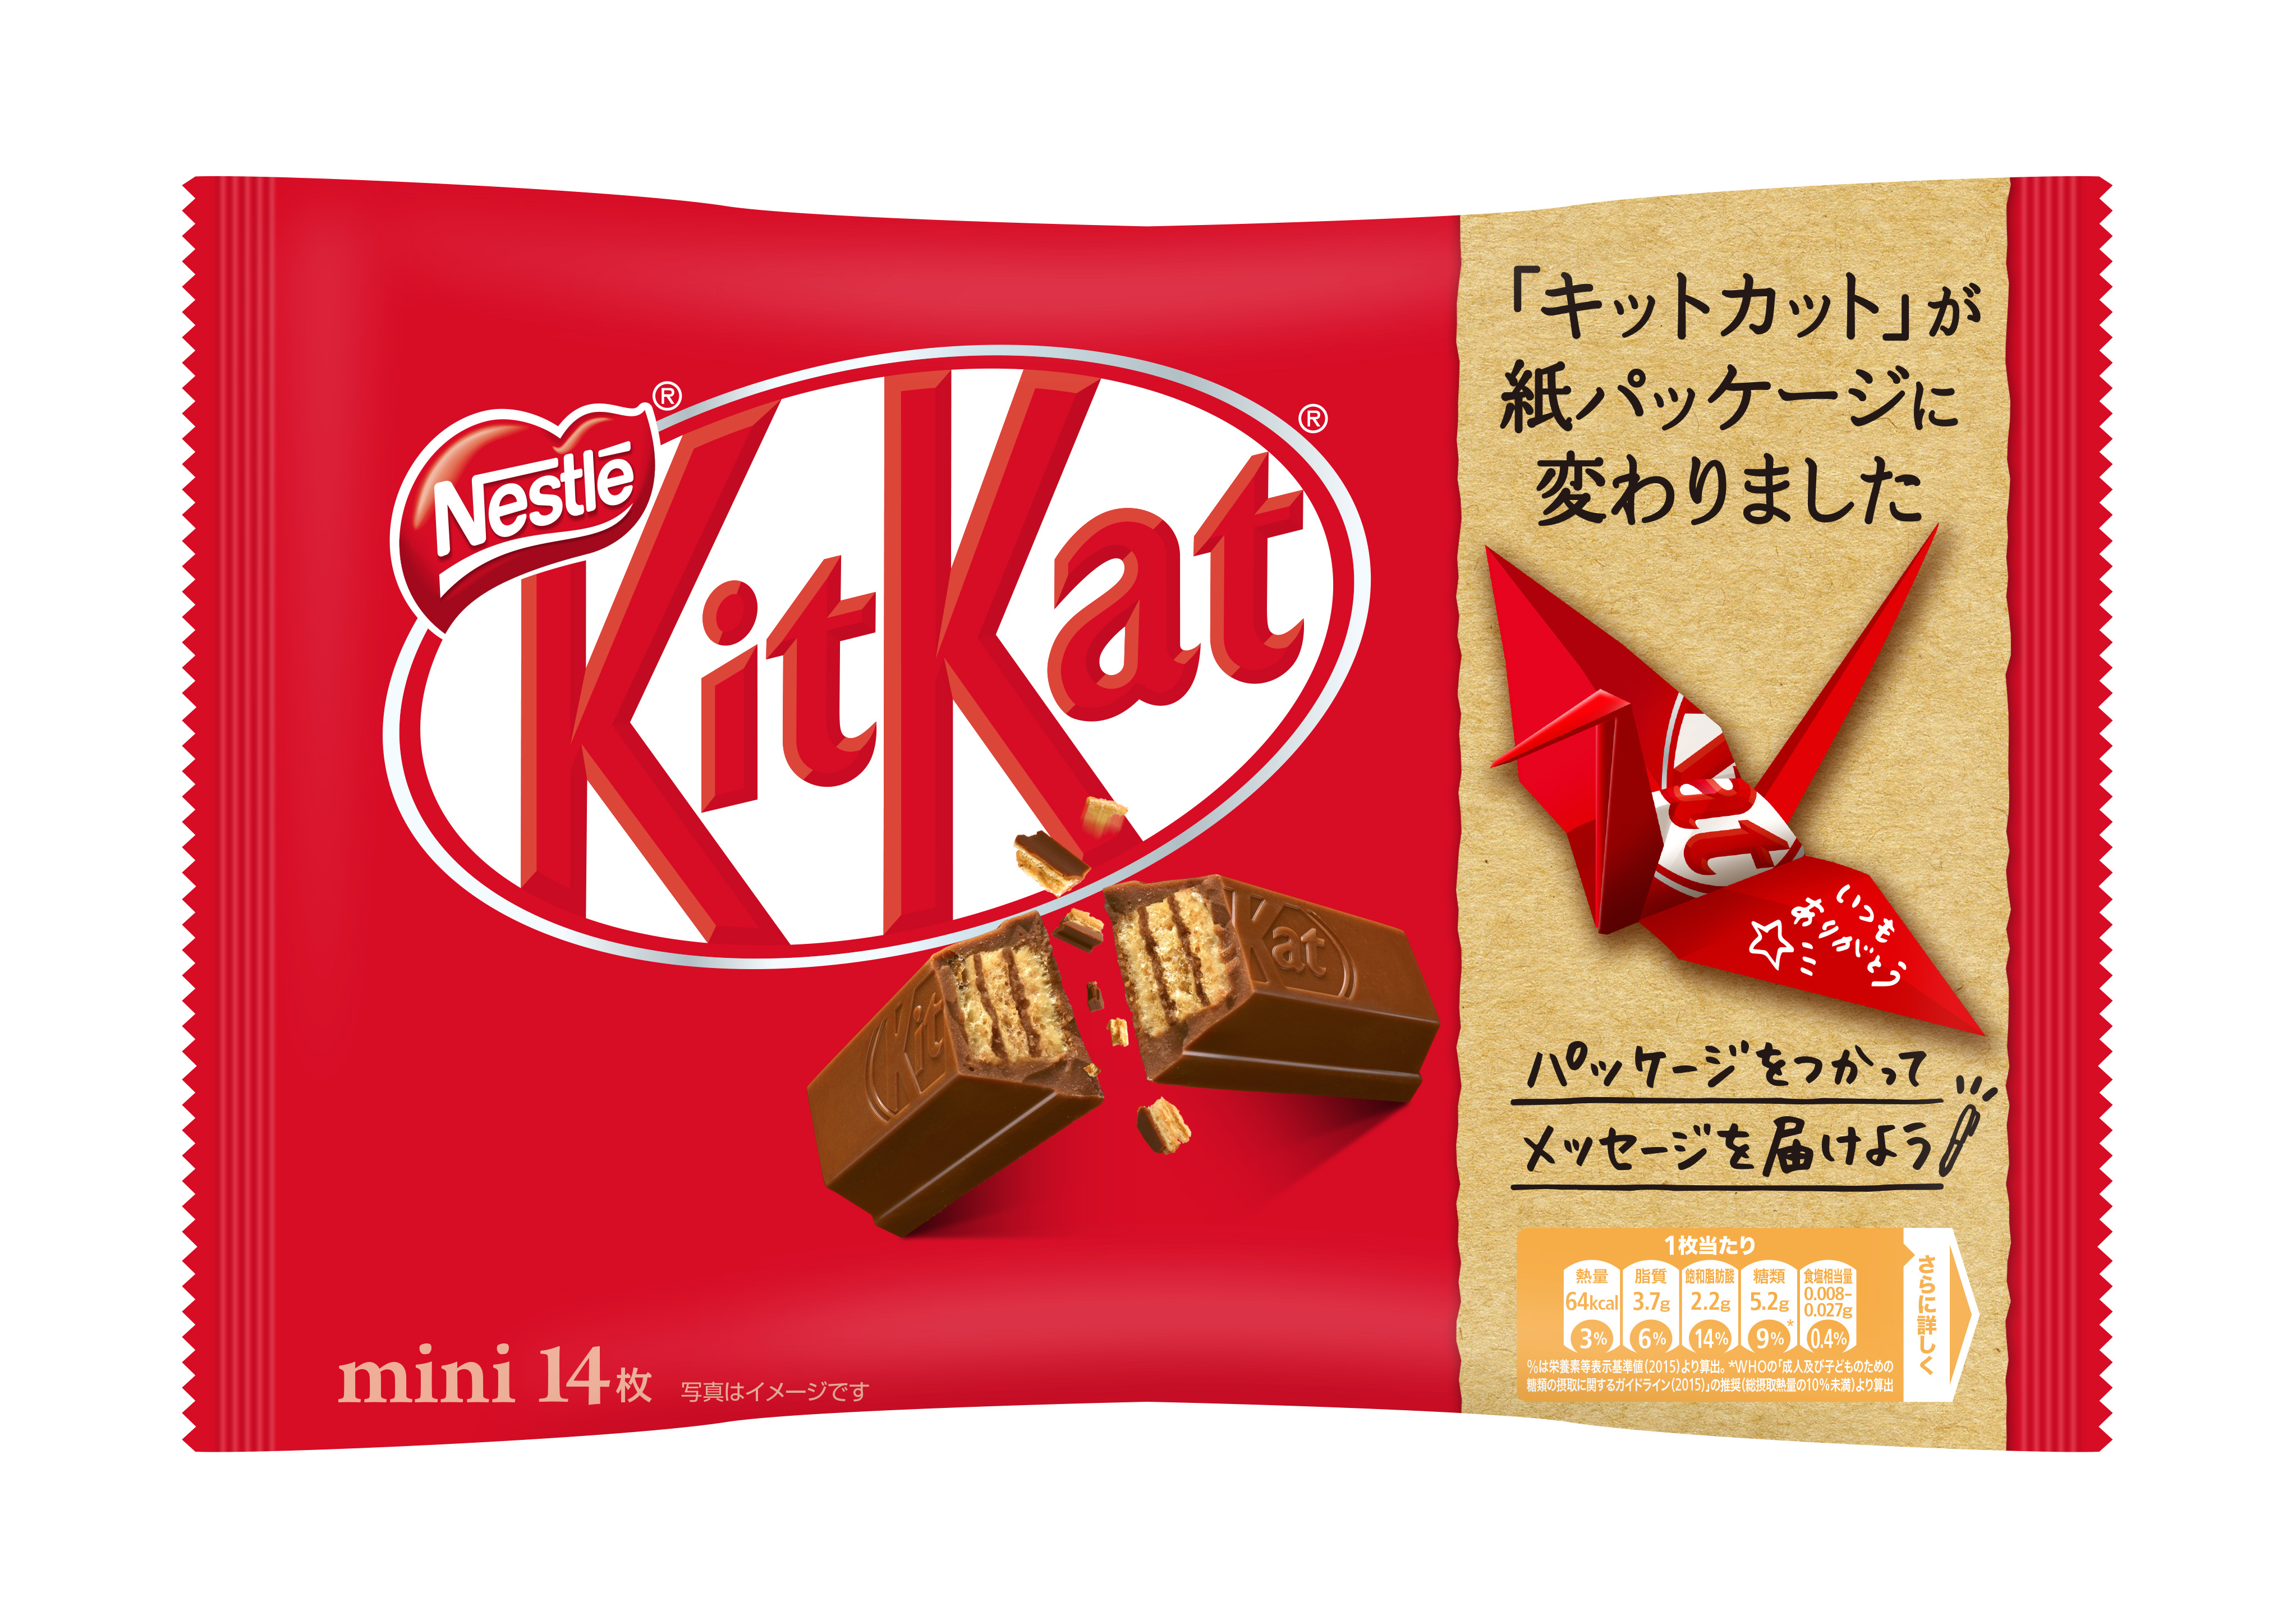 レギュラーソリュブルコーヒーの『ネスカフェ』や、チョコレート菓子の『キットカット』等のブランドを多数展開する、世界最大級の食品飲料会社「ネスレ」の日本法人の同社。